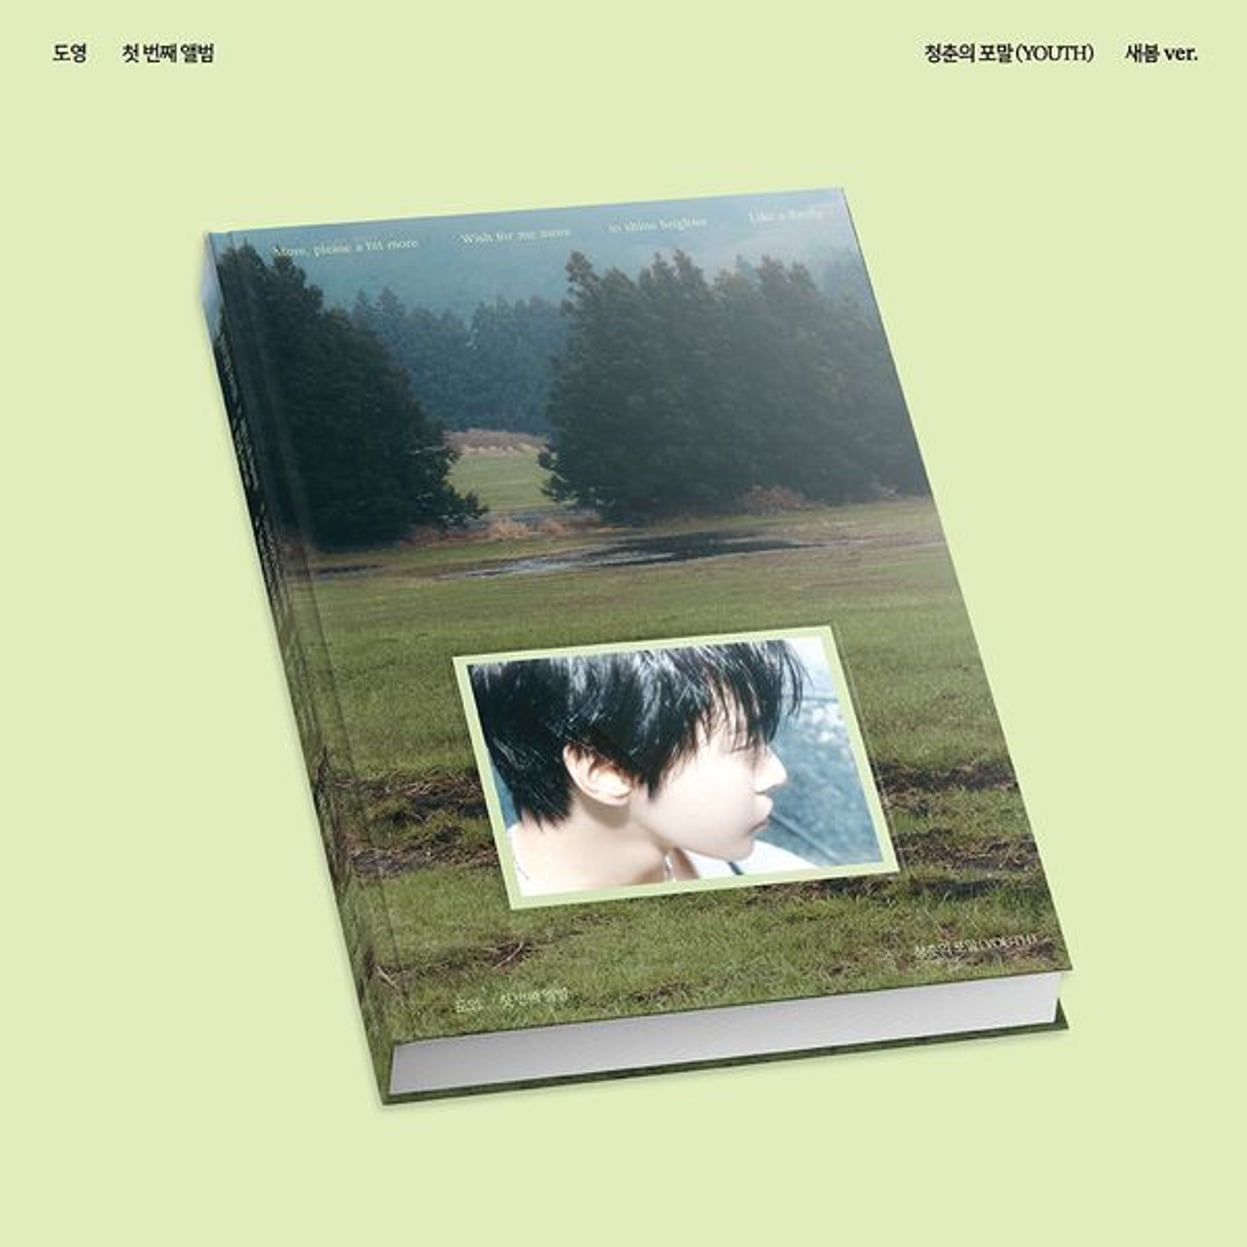 ドヨン(DOYOUNG) - 1stアルバム [青春の泡沫(YOUTH)] (セボムVer.)